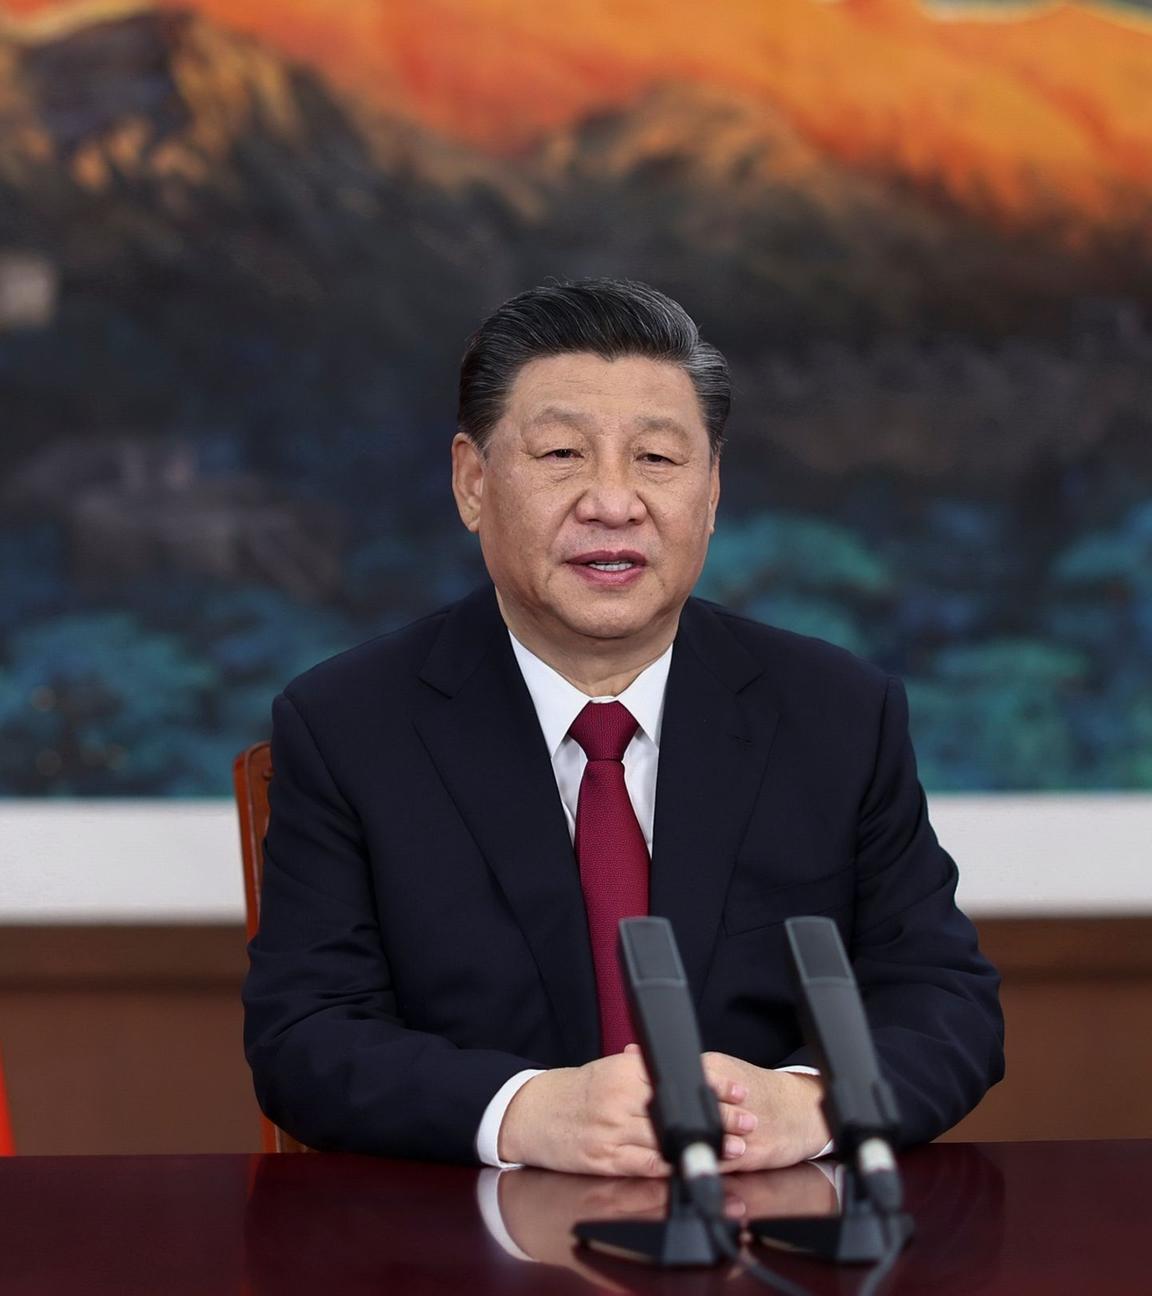 Xi Jinping, Präsident von China. Archivbild